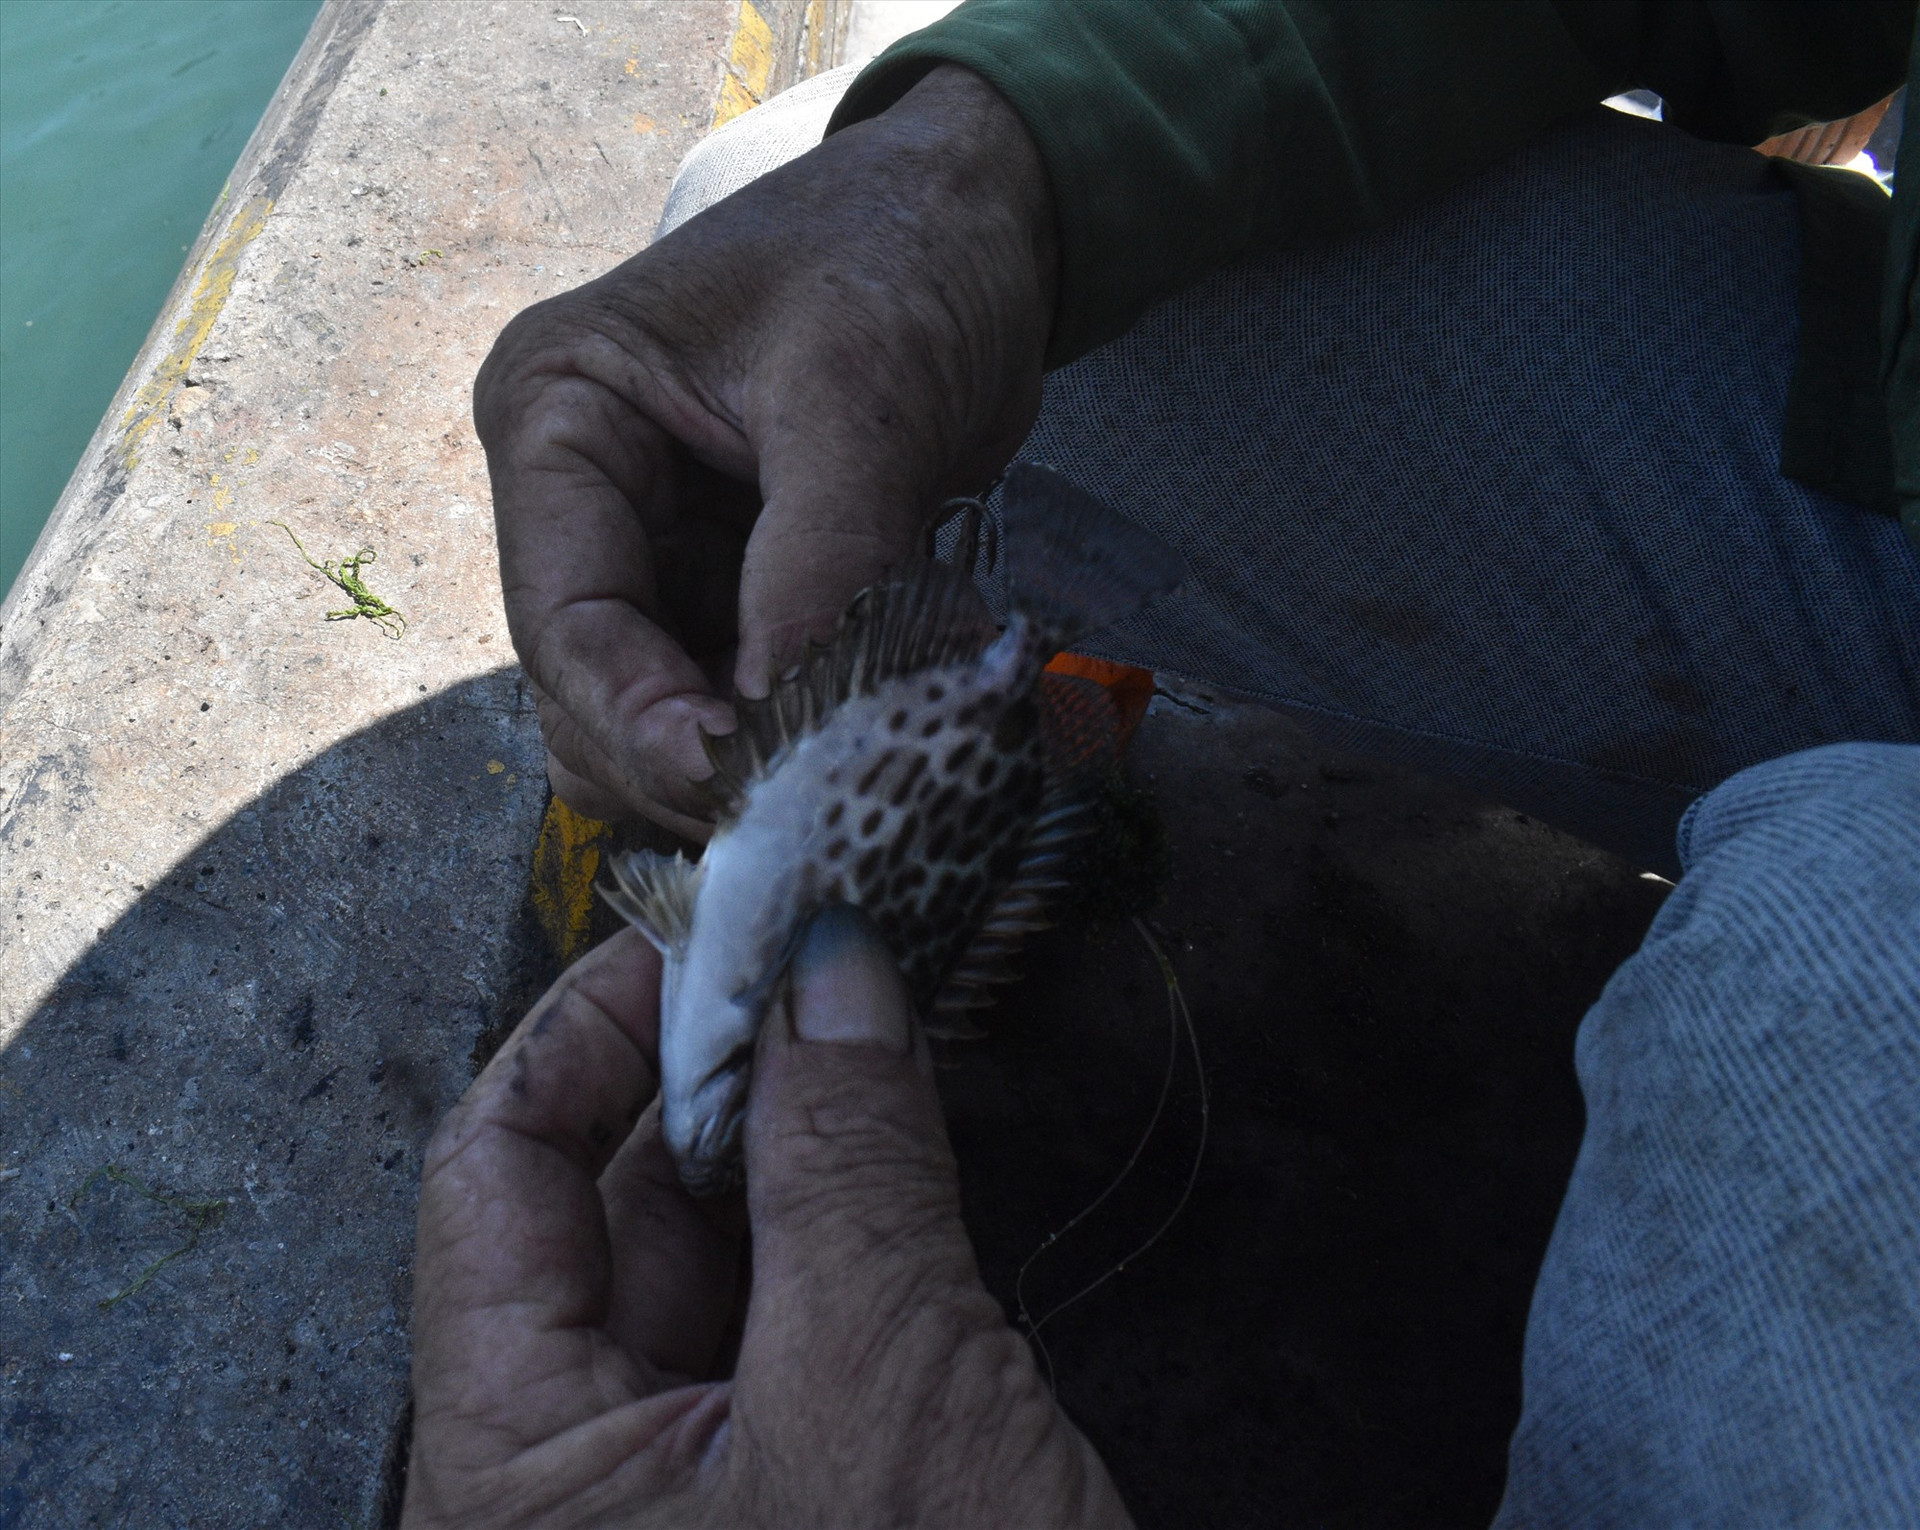 Gỡ cá dìa khỏi lưỡi câu cũng phải hết sức cẩn thận vì gai cá dìa có thể làm đau buốt nếu đâm phải vào tay. Ảnh: N.Q